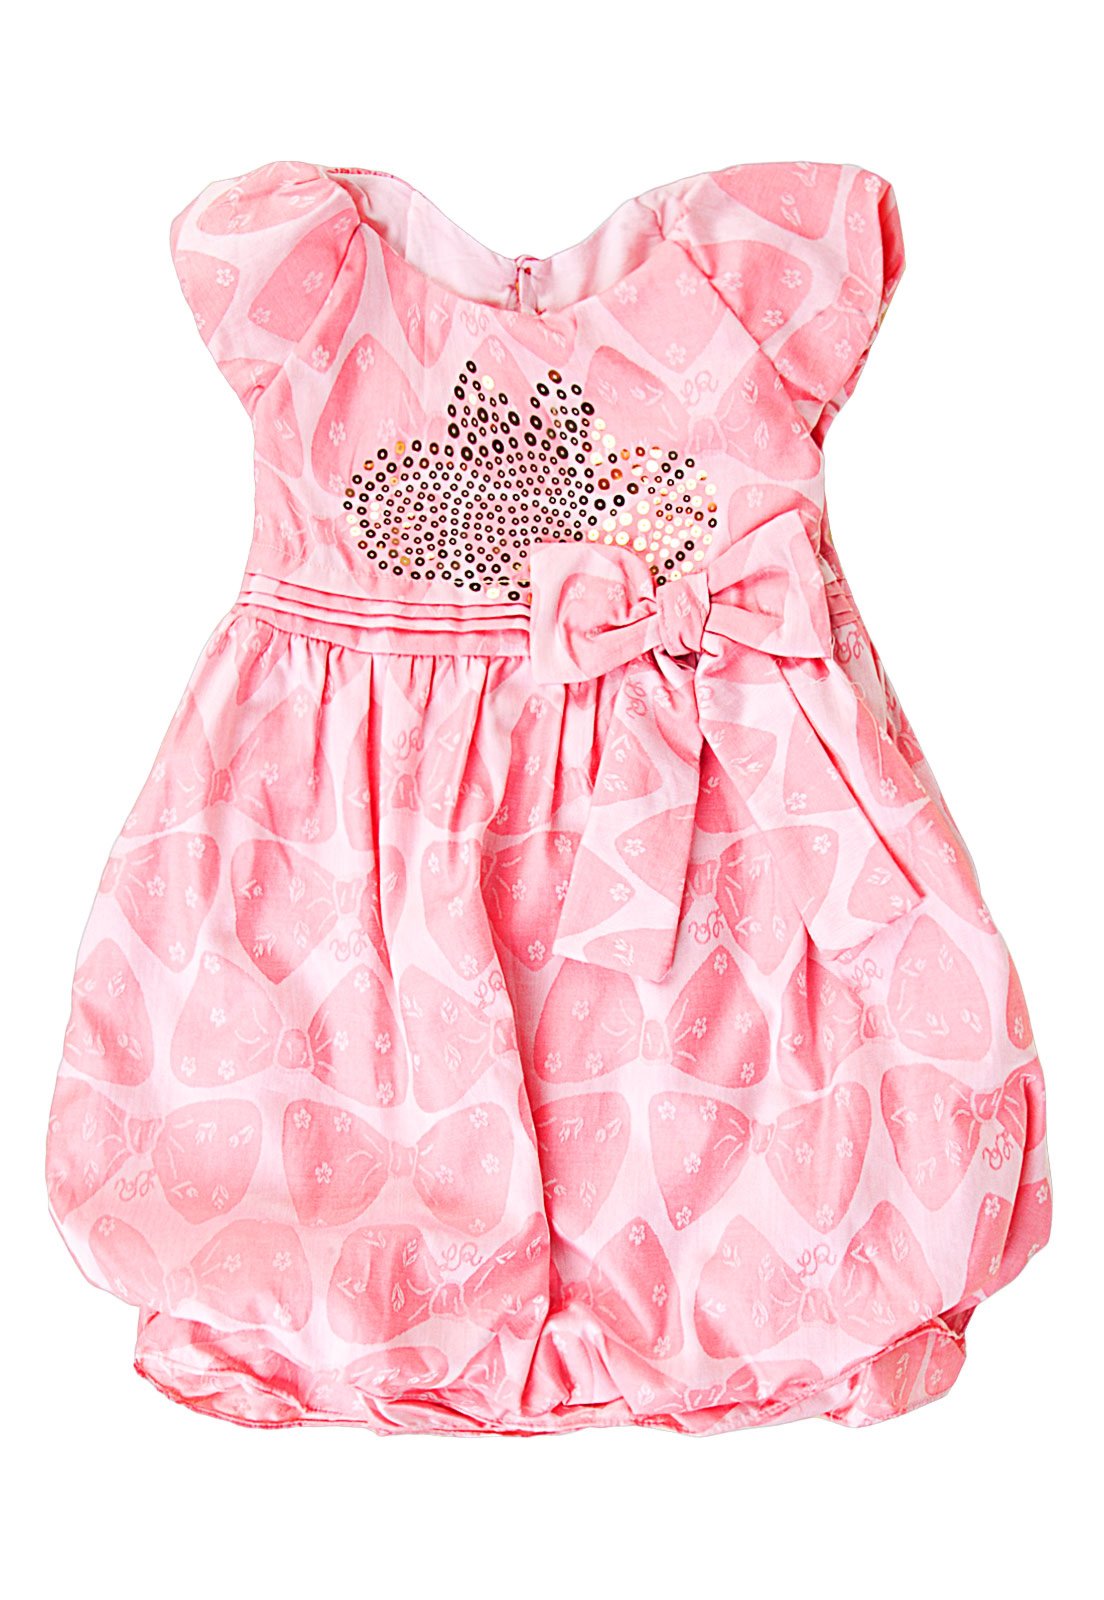 roupas de bebe feminino lilica ripilica